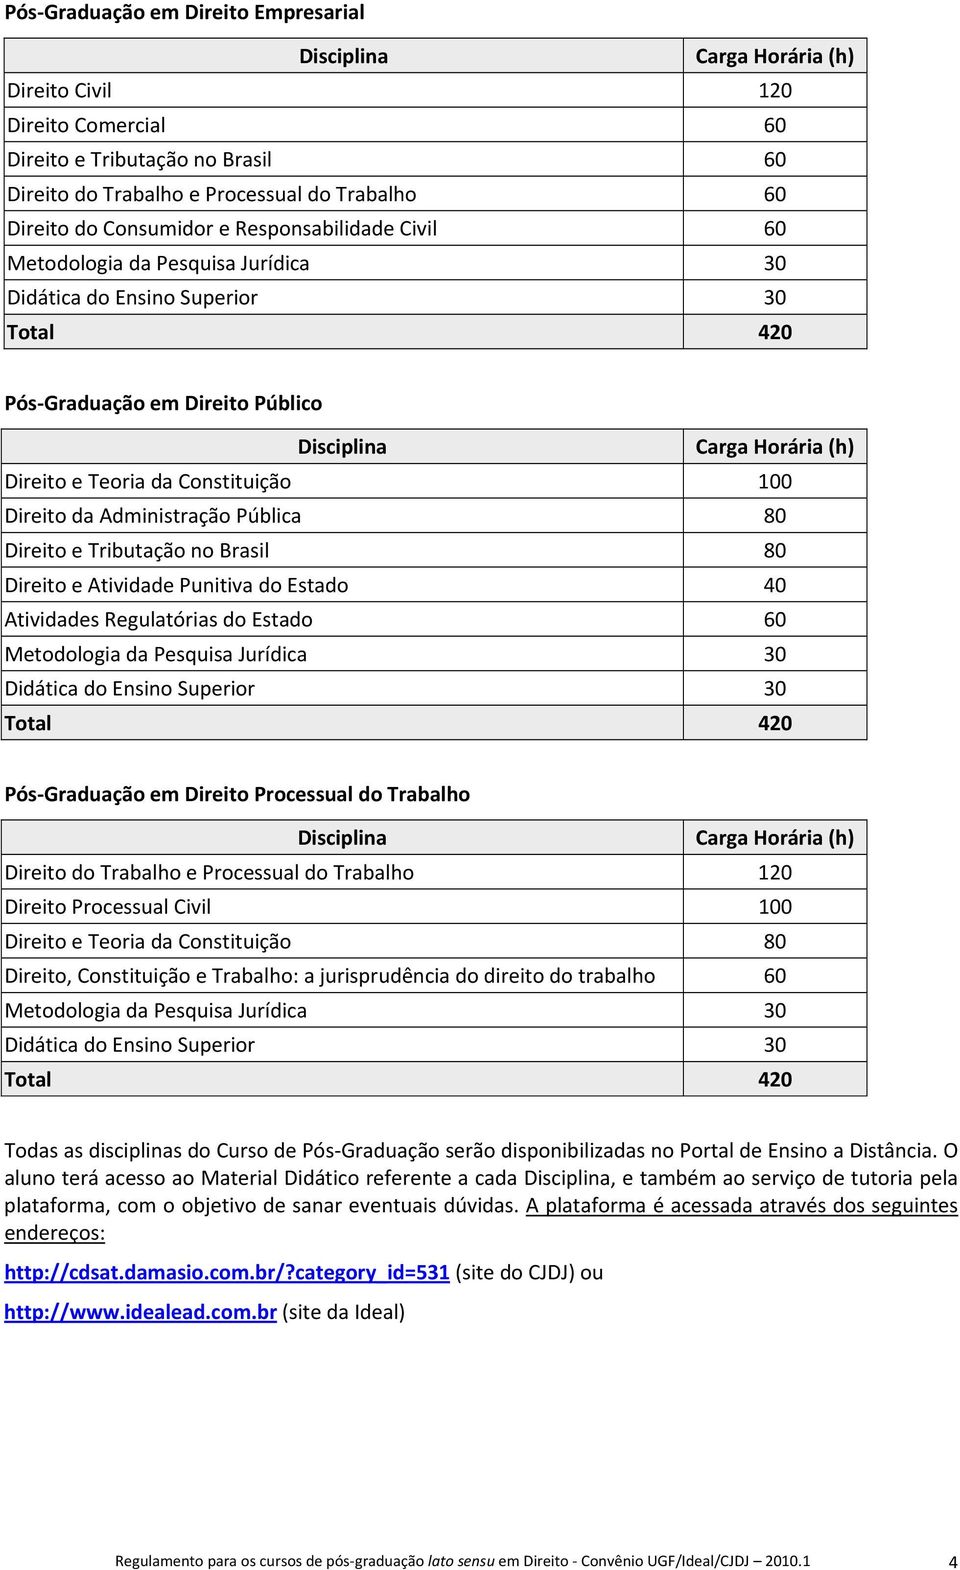 Constituição 100 Direito da Administração Pública 80 Direito e Tributação no Brasil 80 Direito e Atividade Punitiva do Estado 40 Atividades Regulatórias do Estado 60 Metodologia da Pesquisa Jurídica